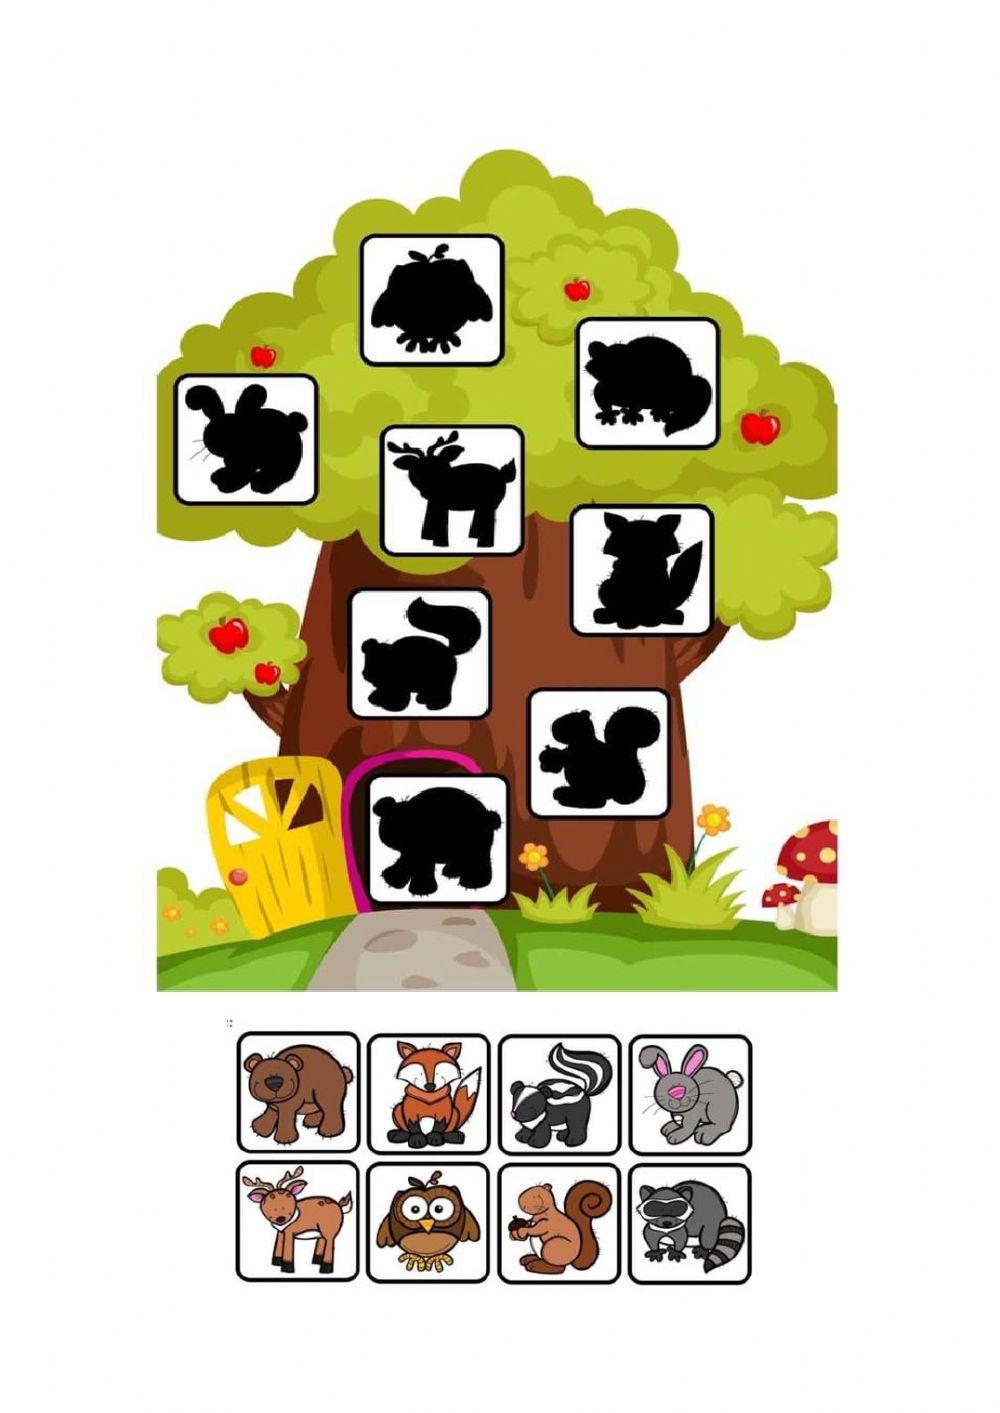 Encontre a sombra correta do animal jogos educativos de lógica para  crianças para imprimir